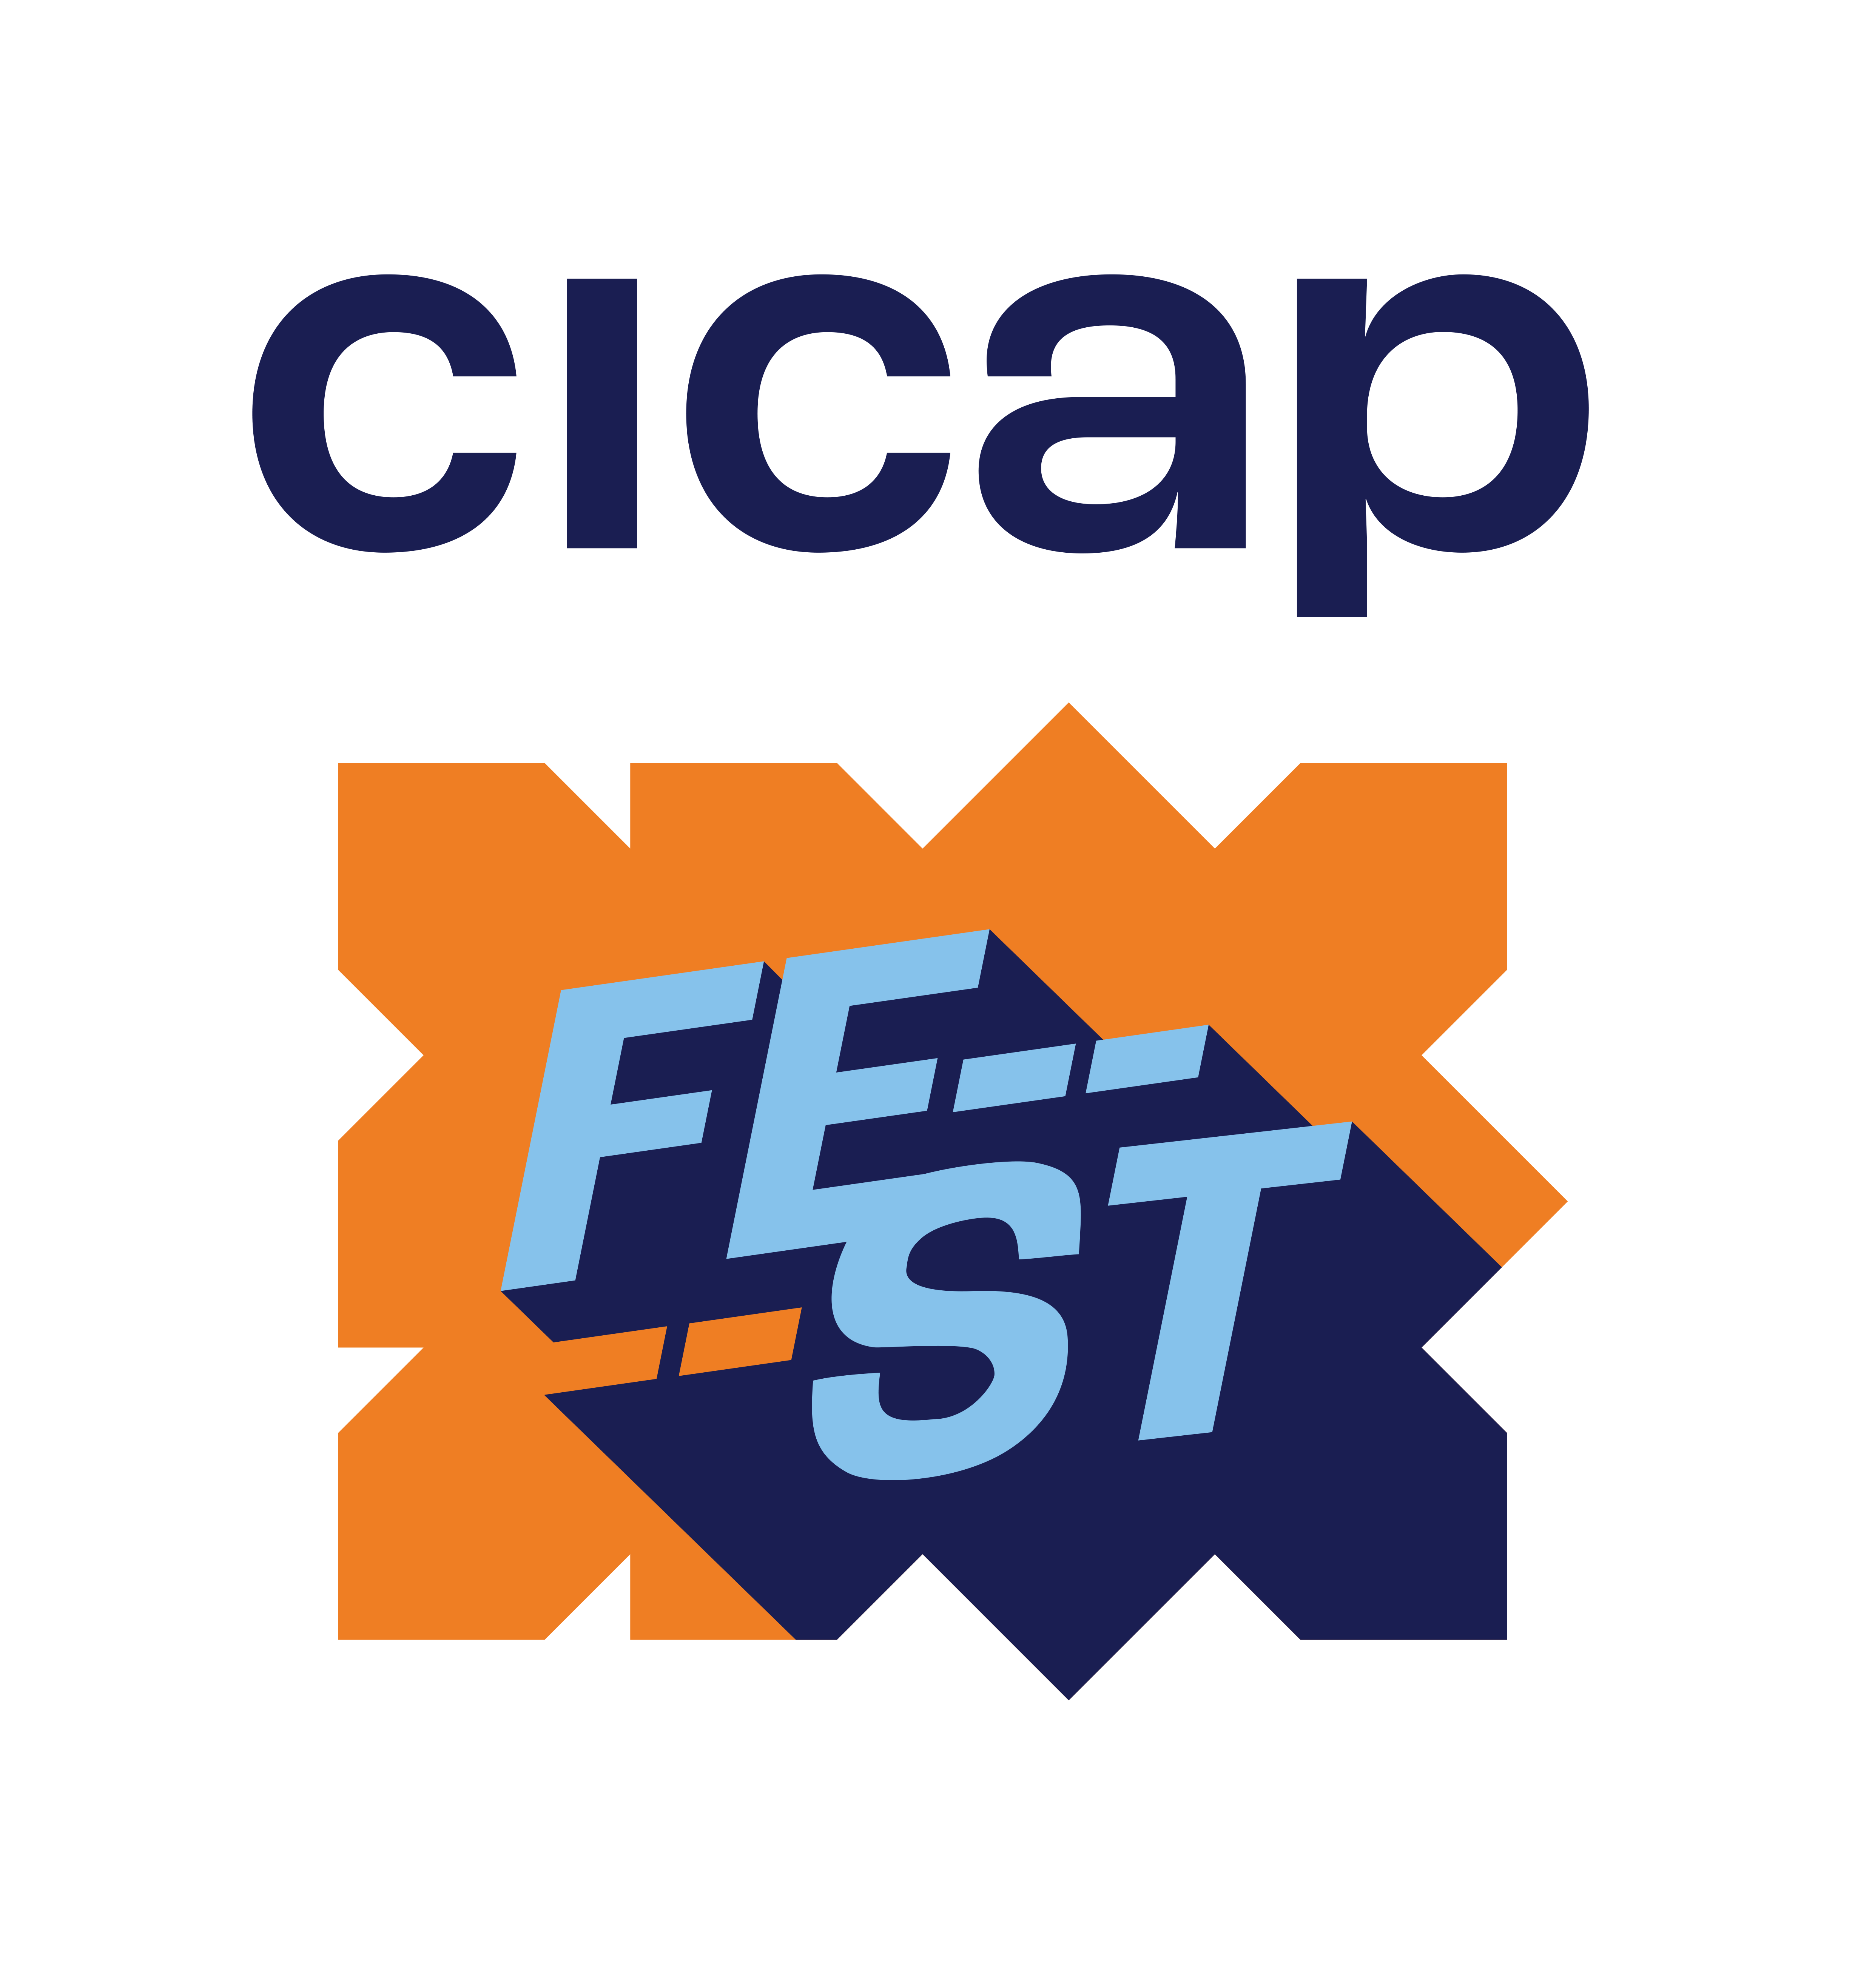 CICAP Fest